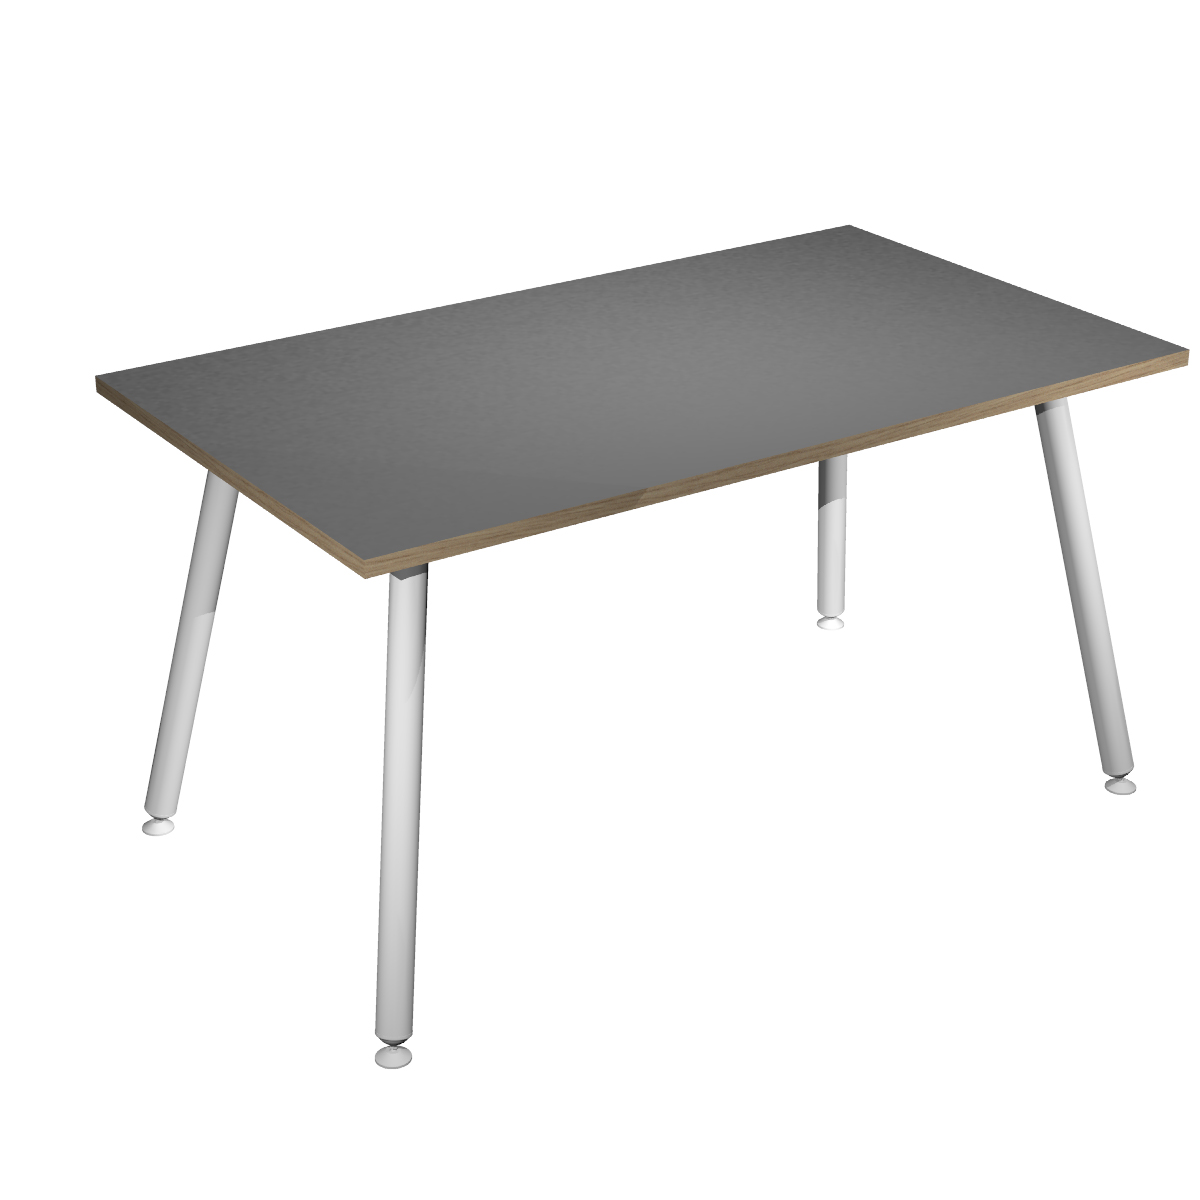 Table haute LEONARDO - 140 x 80 x 105 cm - Pieds métal blancs - Anthracite chants chêne